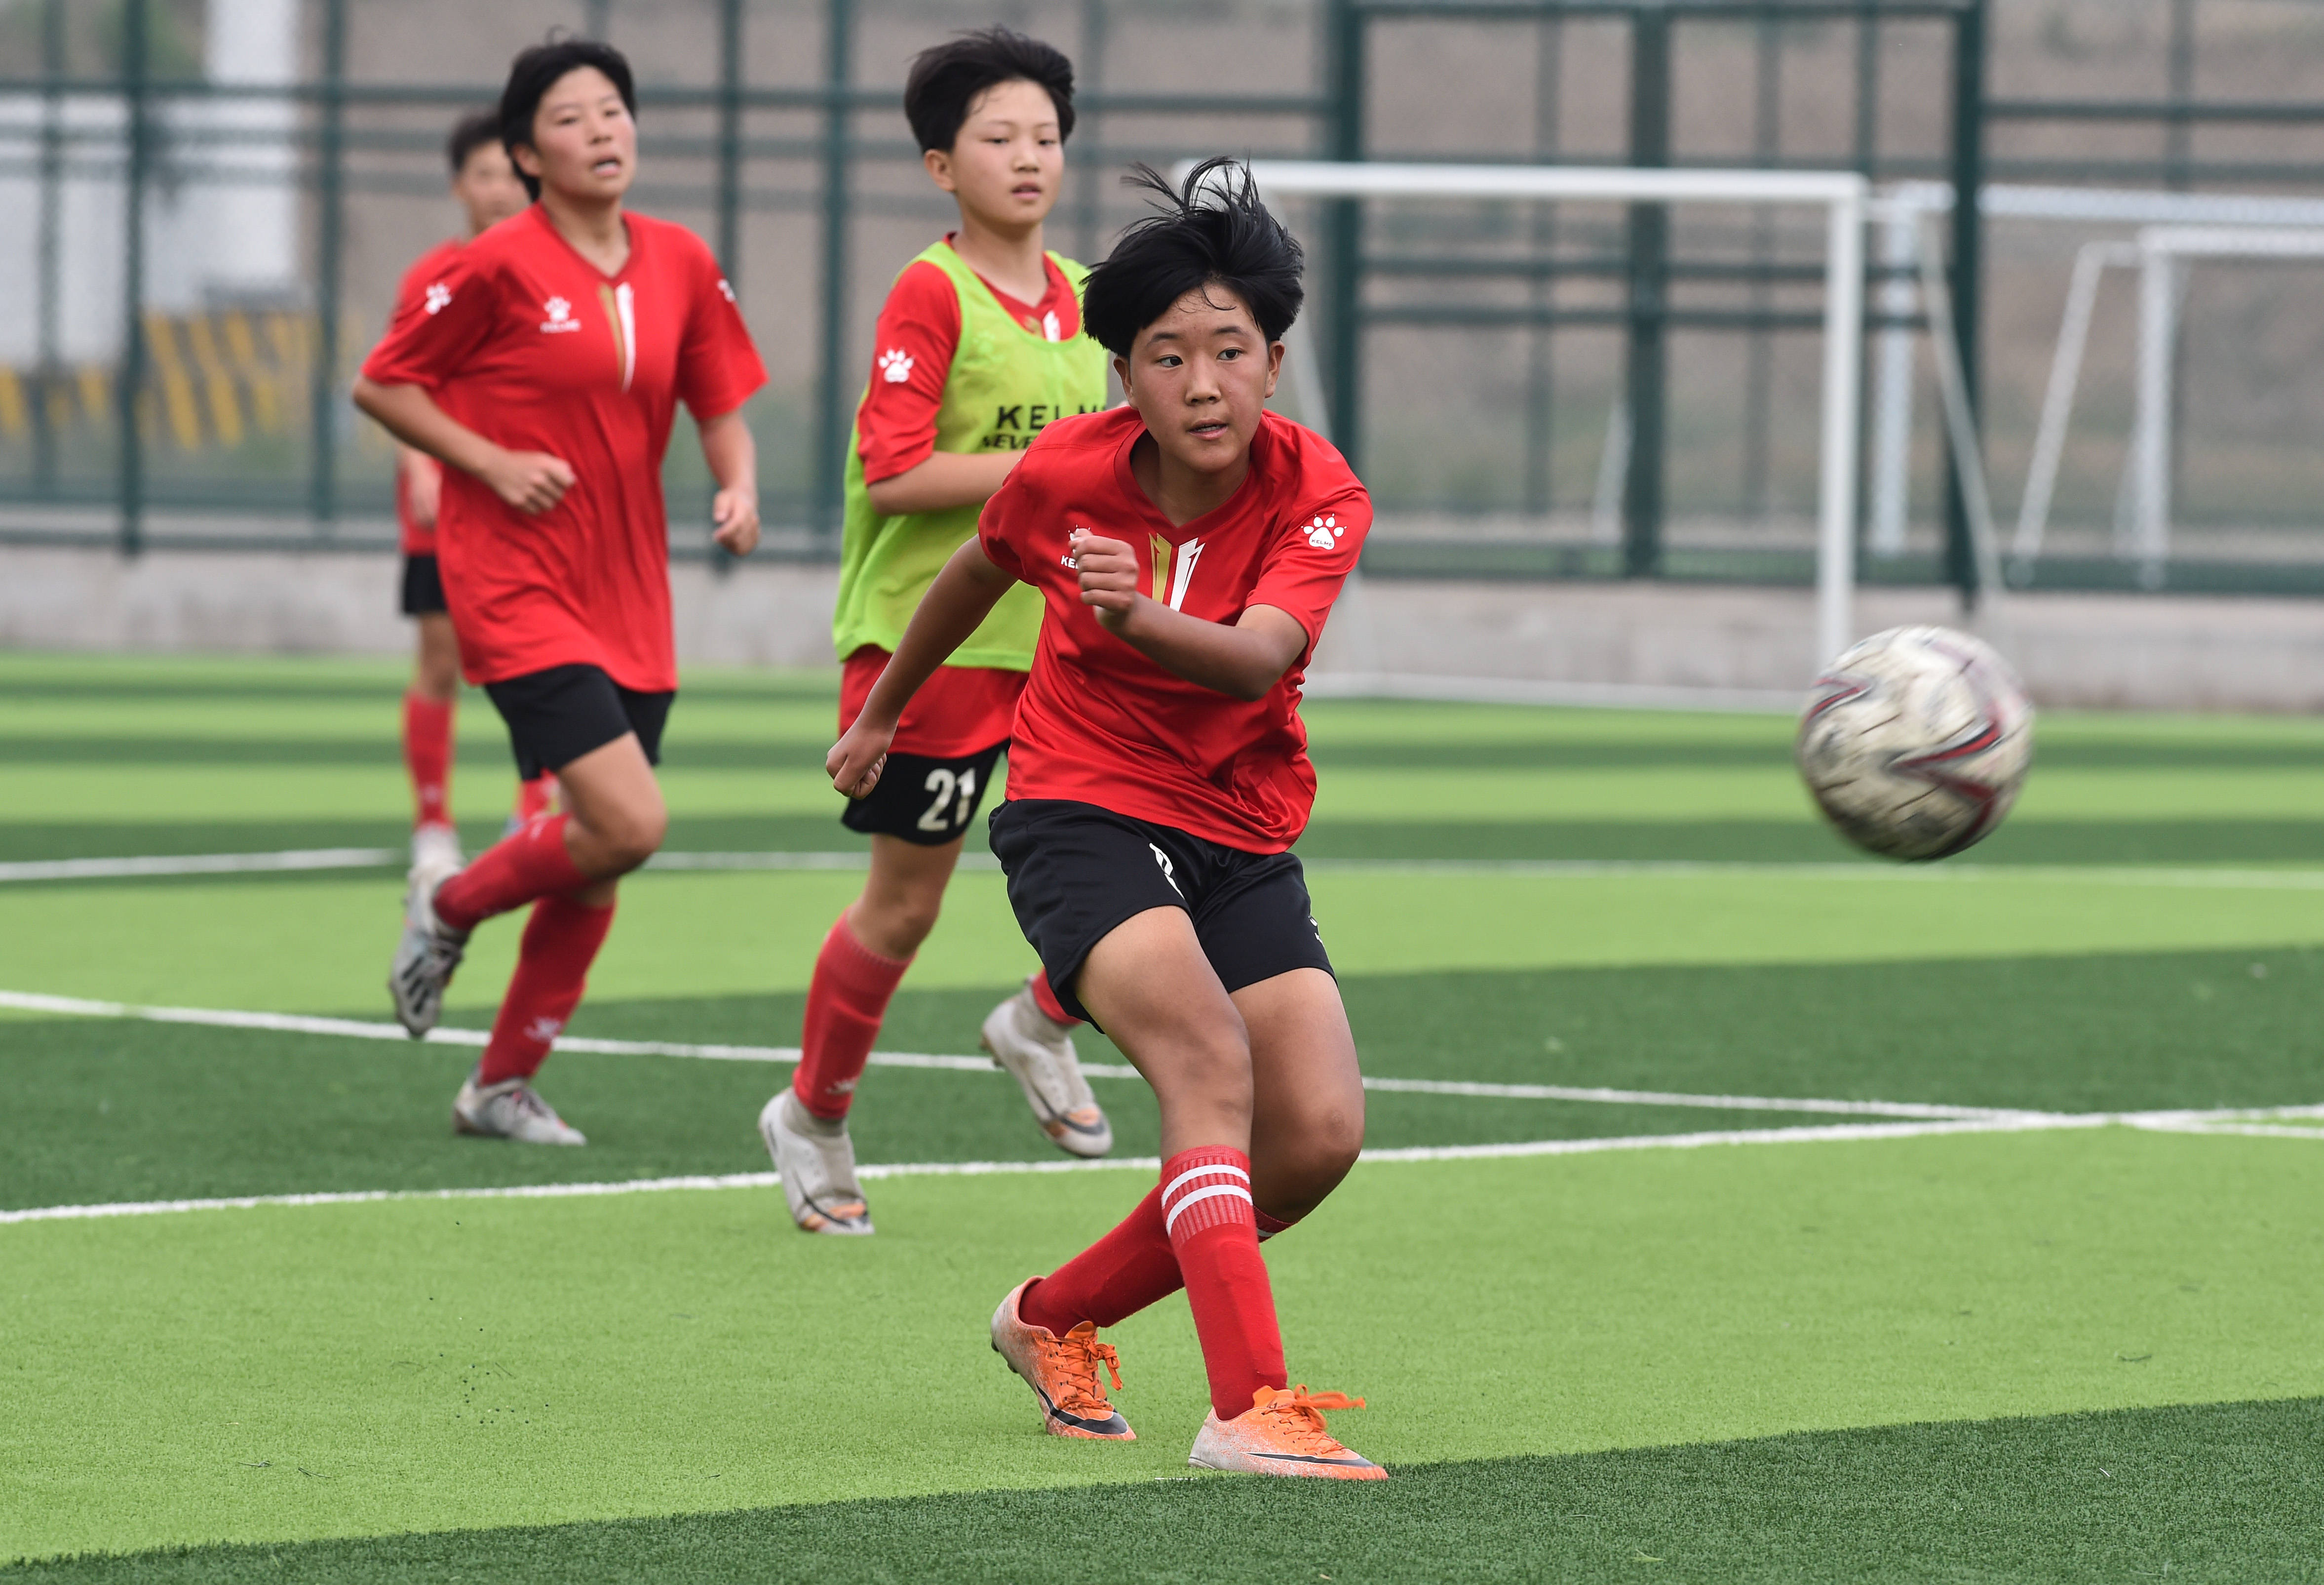 6月19日,在山西省足球训练基地,山西省u13女子足球队队员惠鑫(前)在